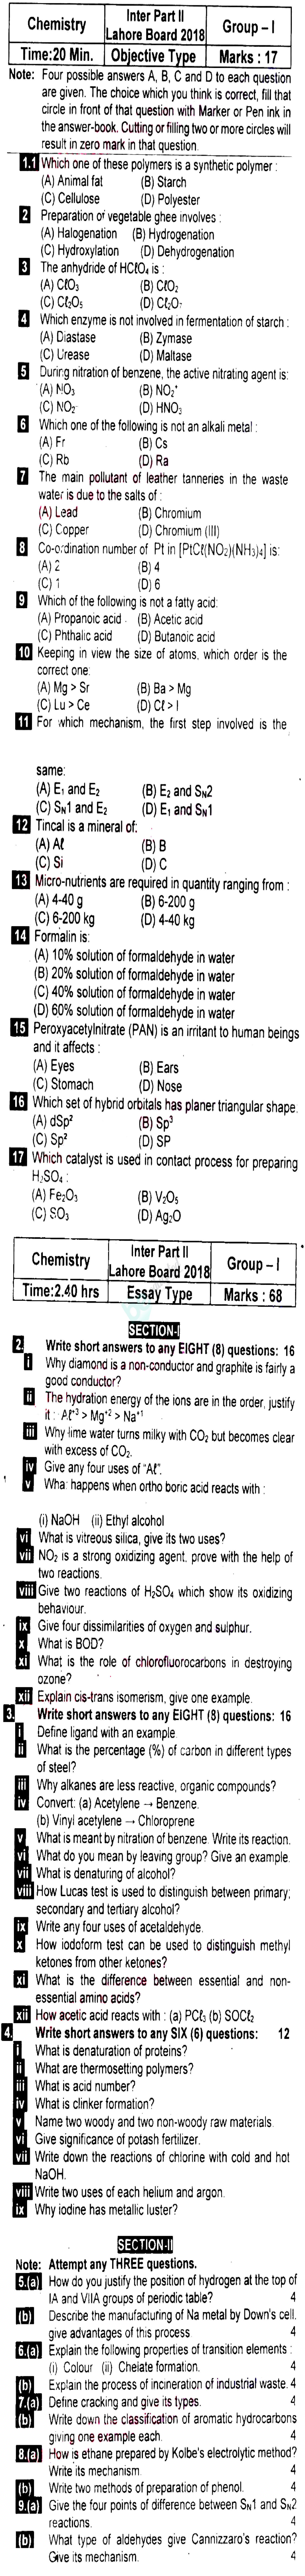 Chemistry FSC Part 2 Past Paper Group 1 BISE Lahore 2018